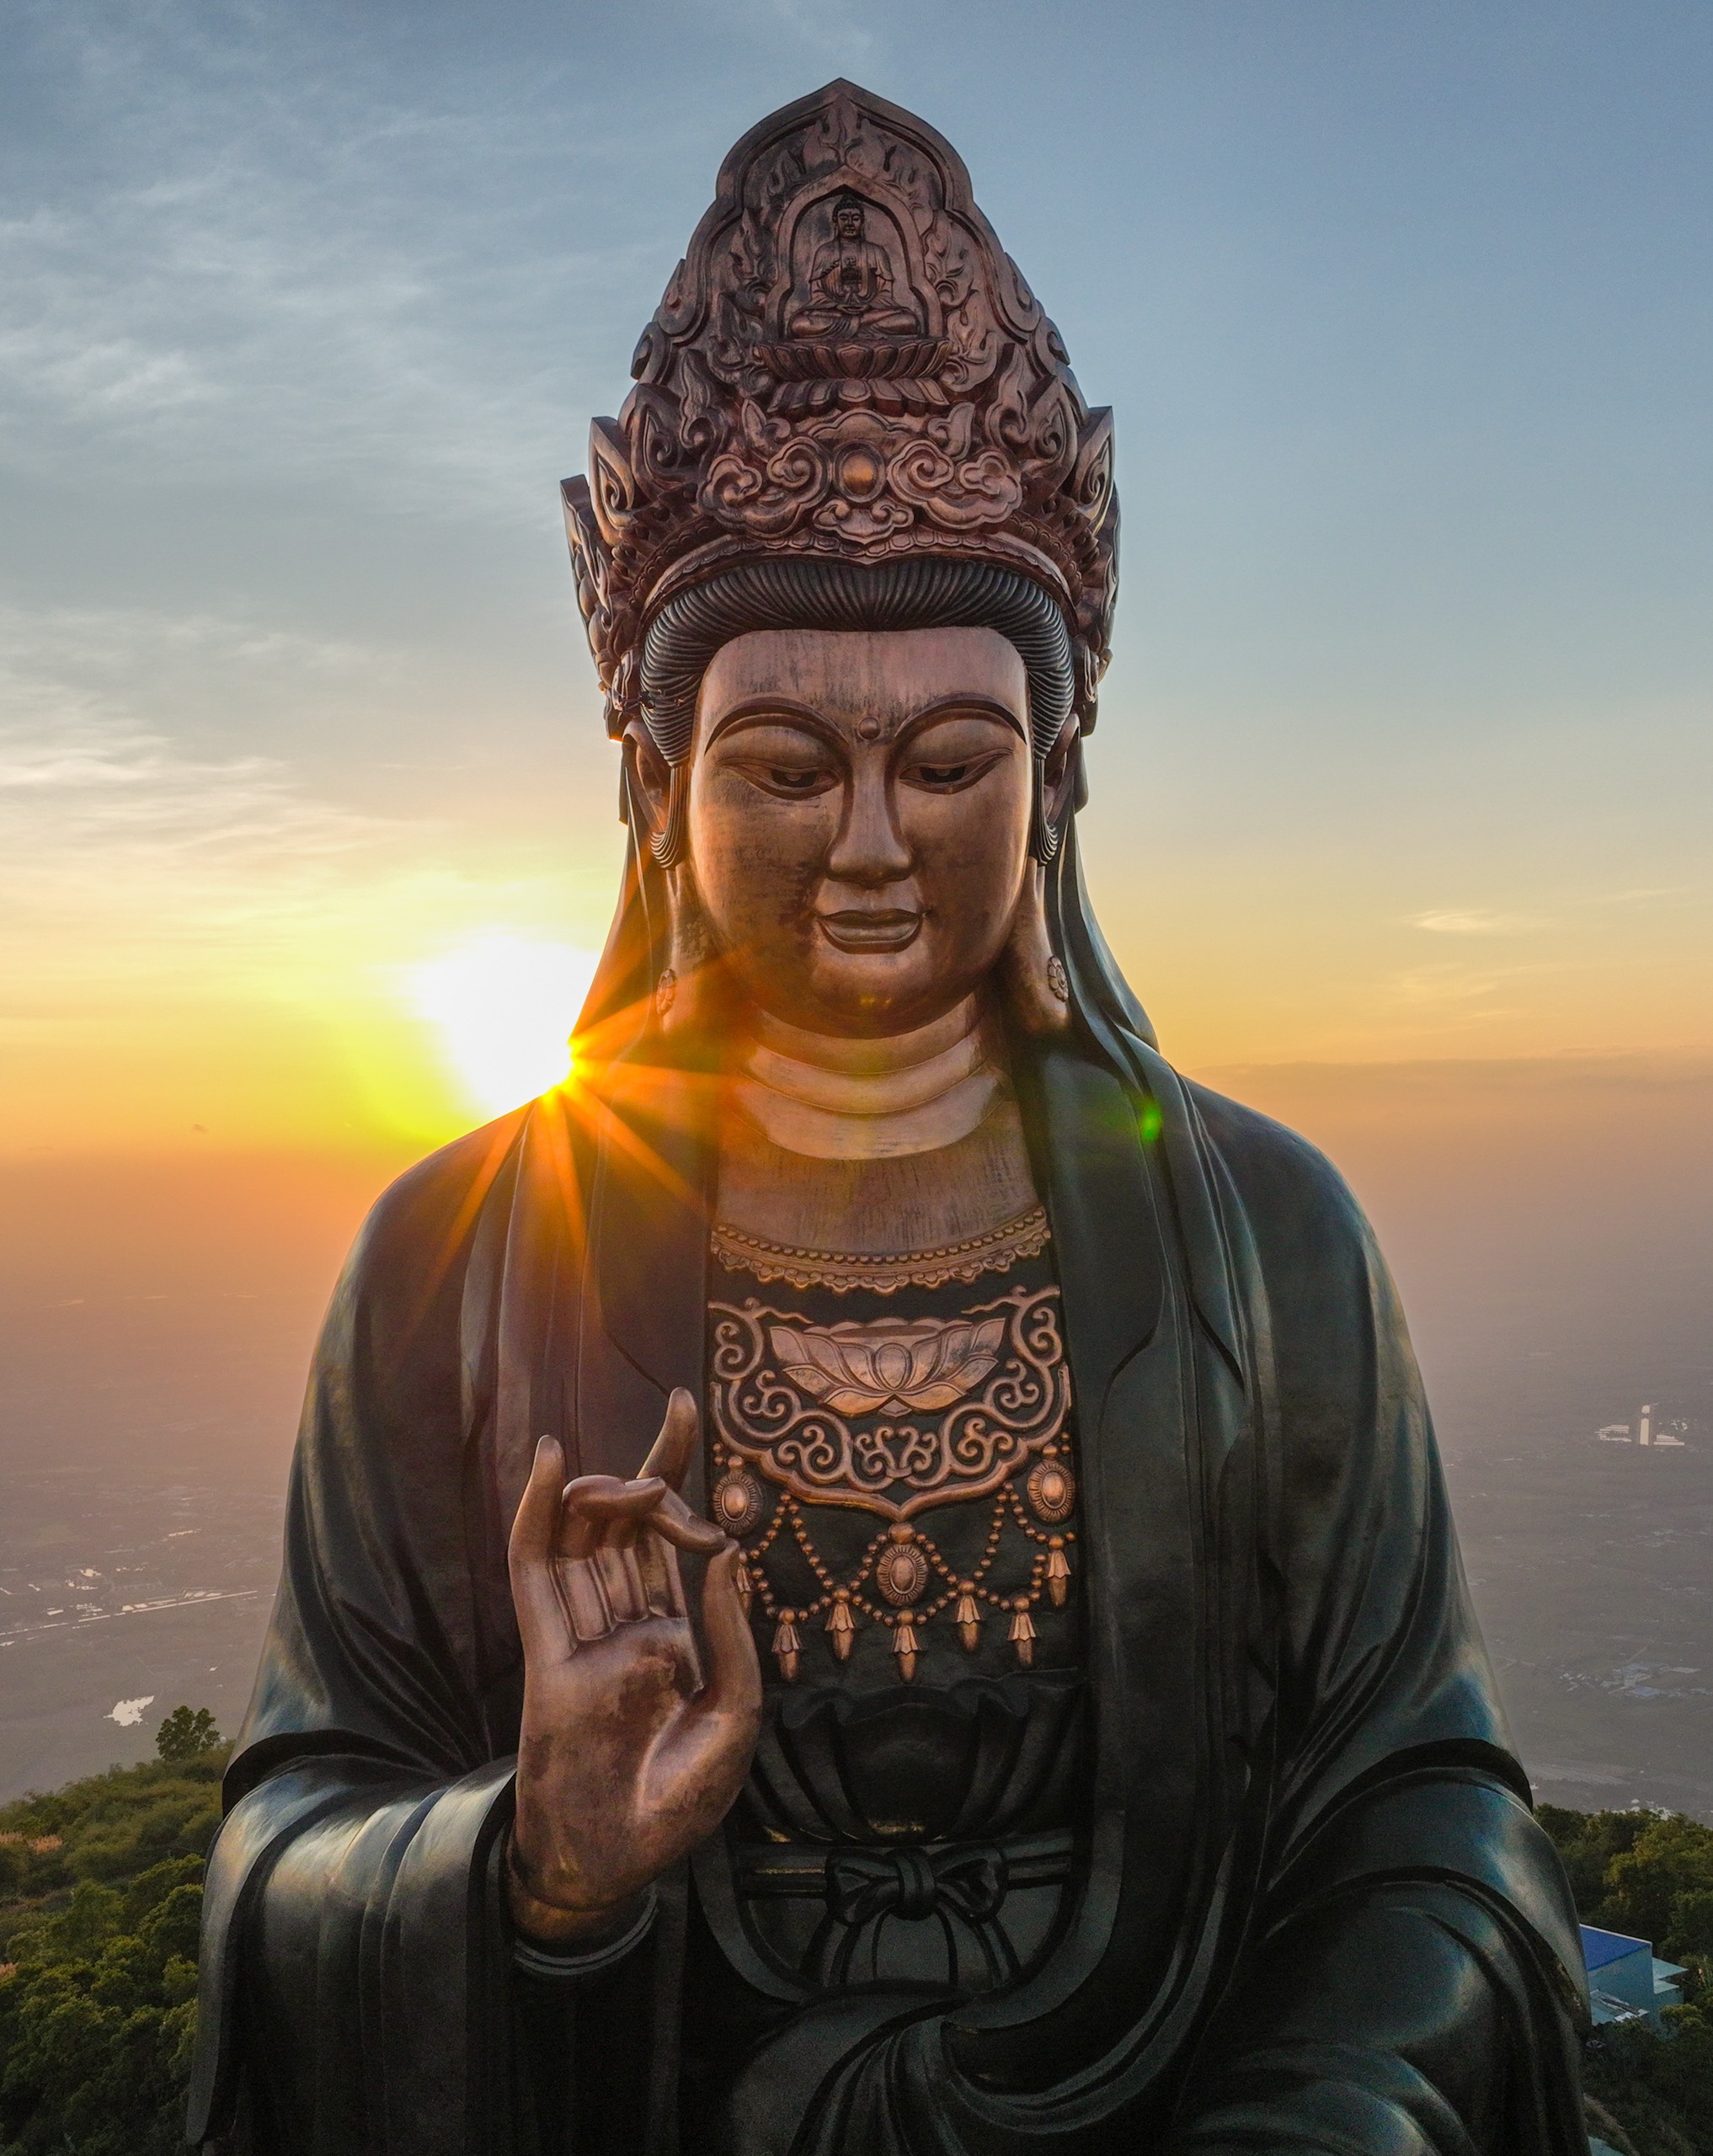 Bức tượng Phật Bà đang trì trệ giữa những đóa sen xanh mát là một trong những tác phẩm nghệ thuật đẹp nhất mà bạn từng được chiêm ngưỡng.